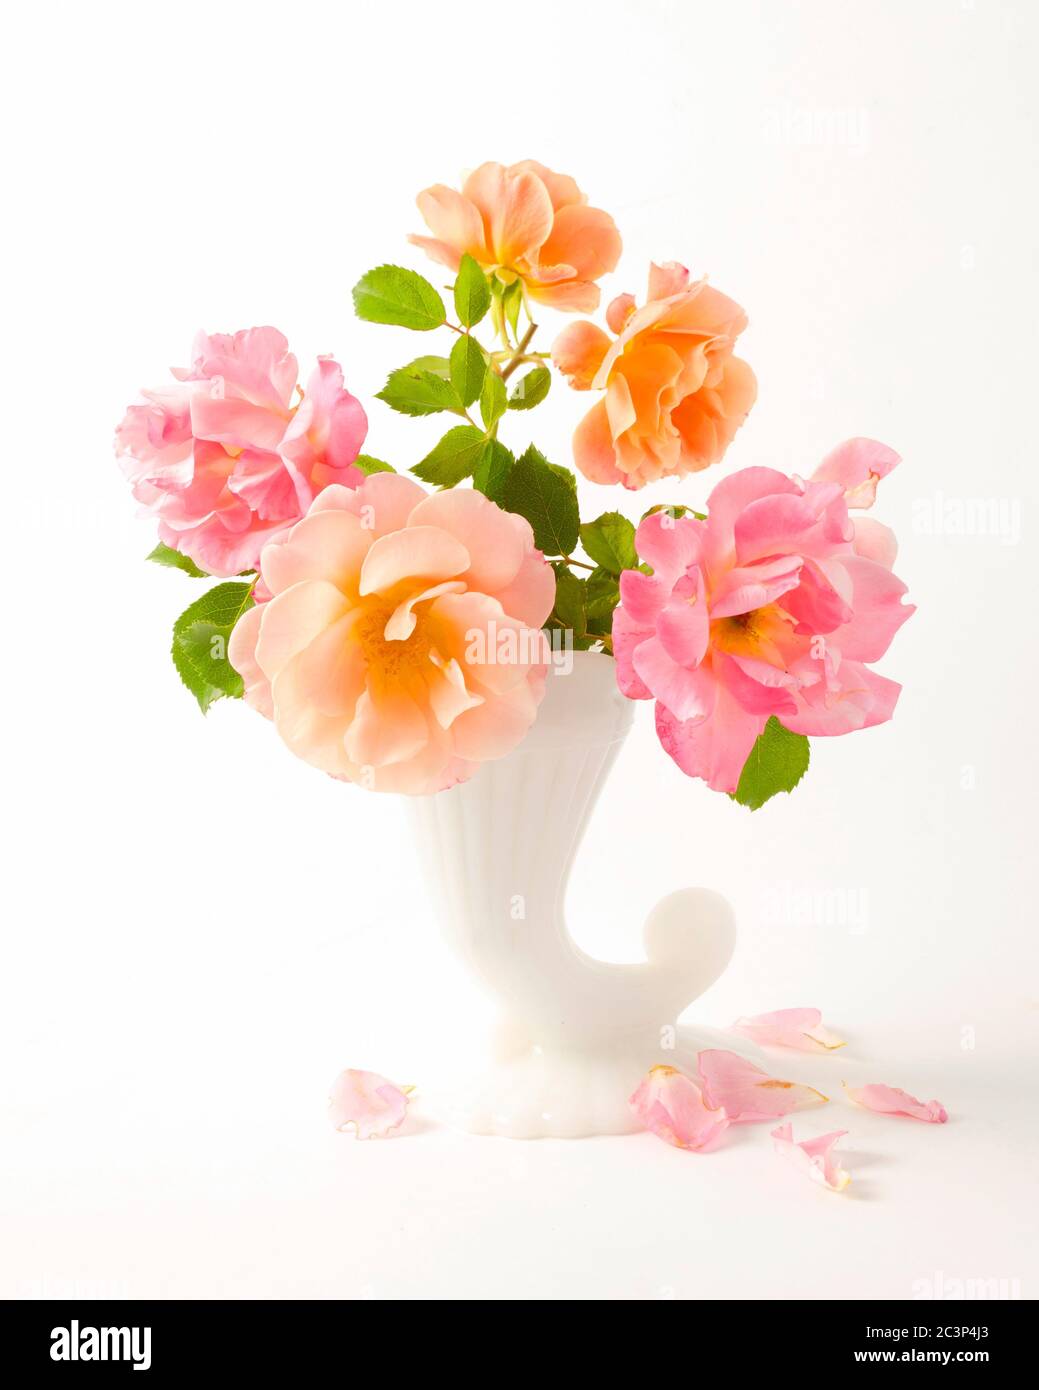 Rose rosa e arancio disposte in vaso di porcellana bianca Foto Stock